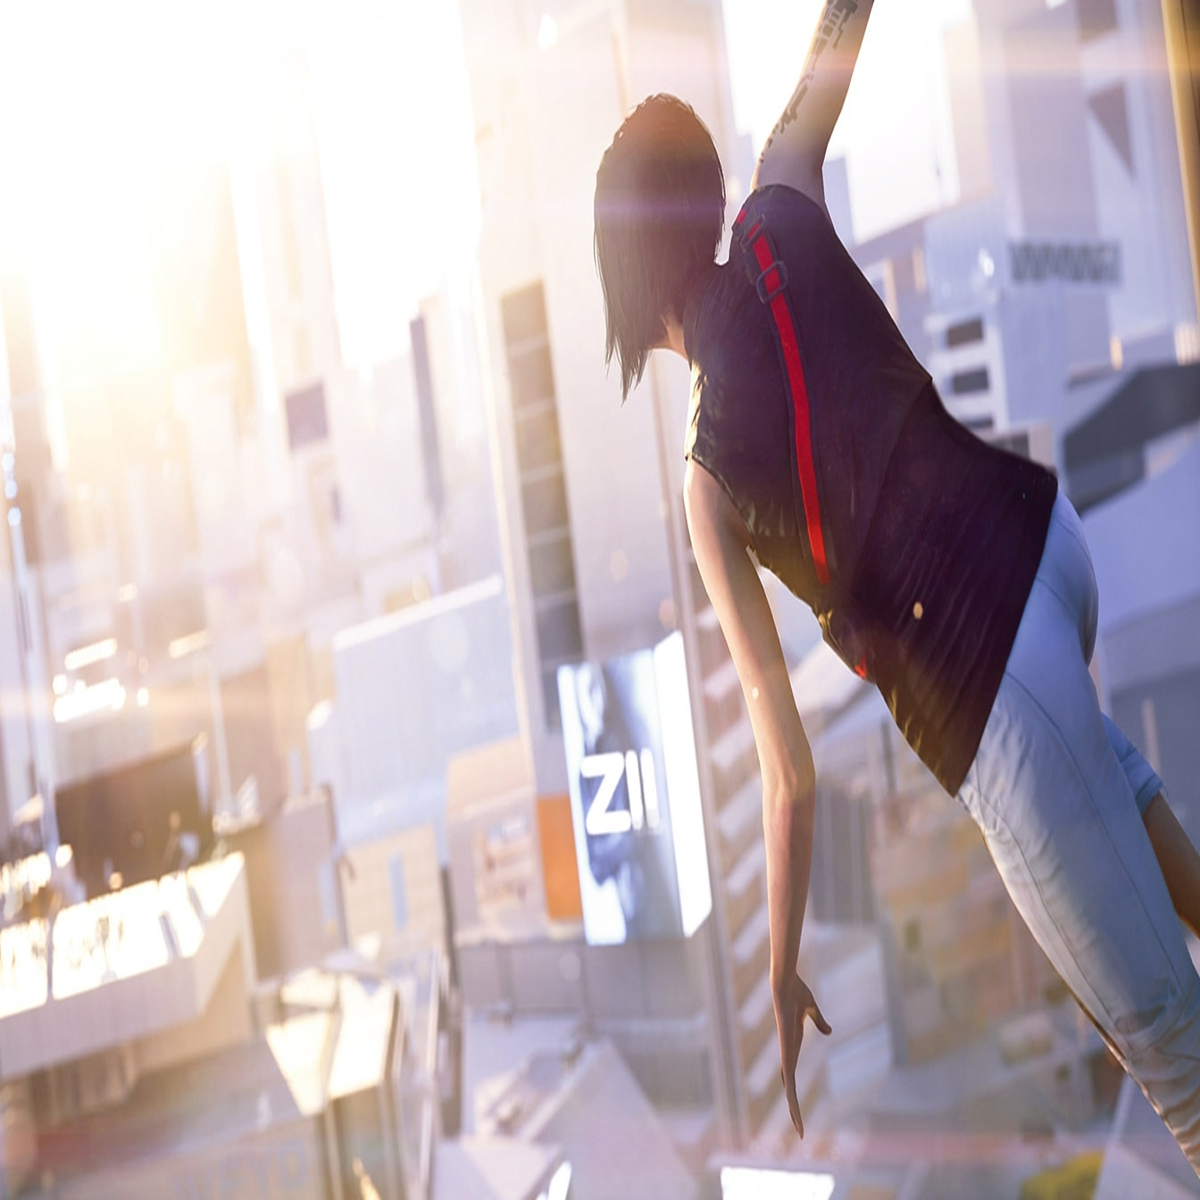 Mirror's Edge - Full Game Walkthrough (60FPS) 